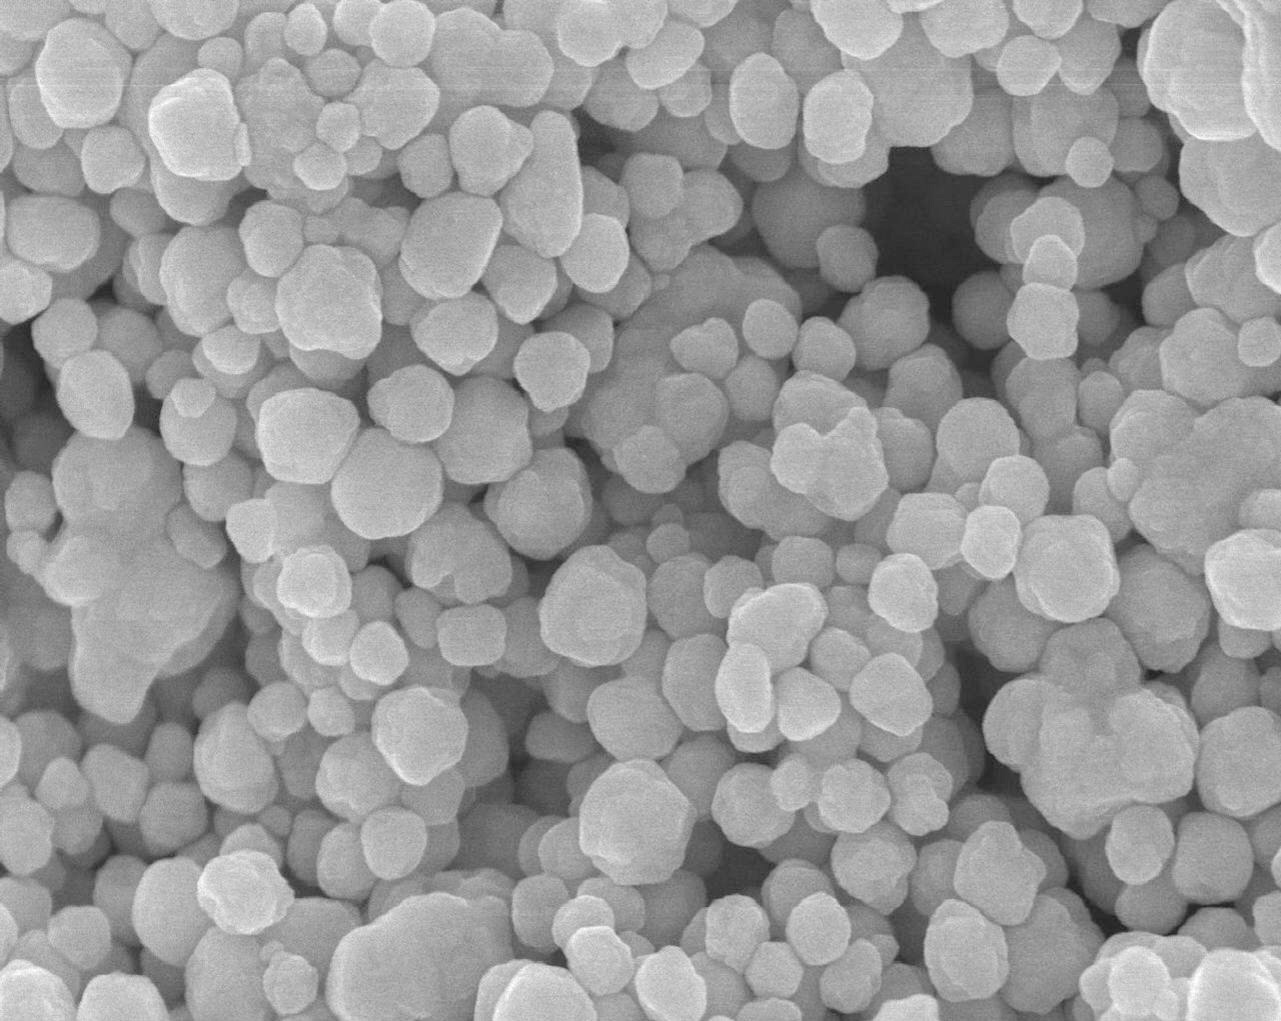 Extraen nanopartículas de plata con almidón de achira.